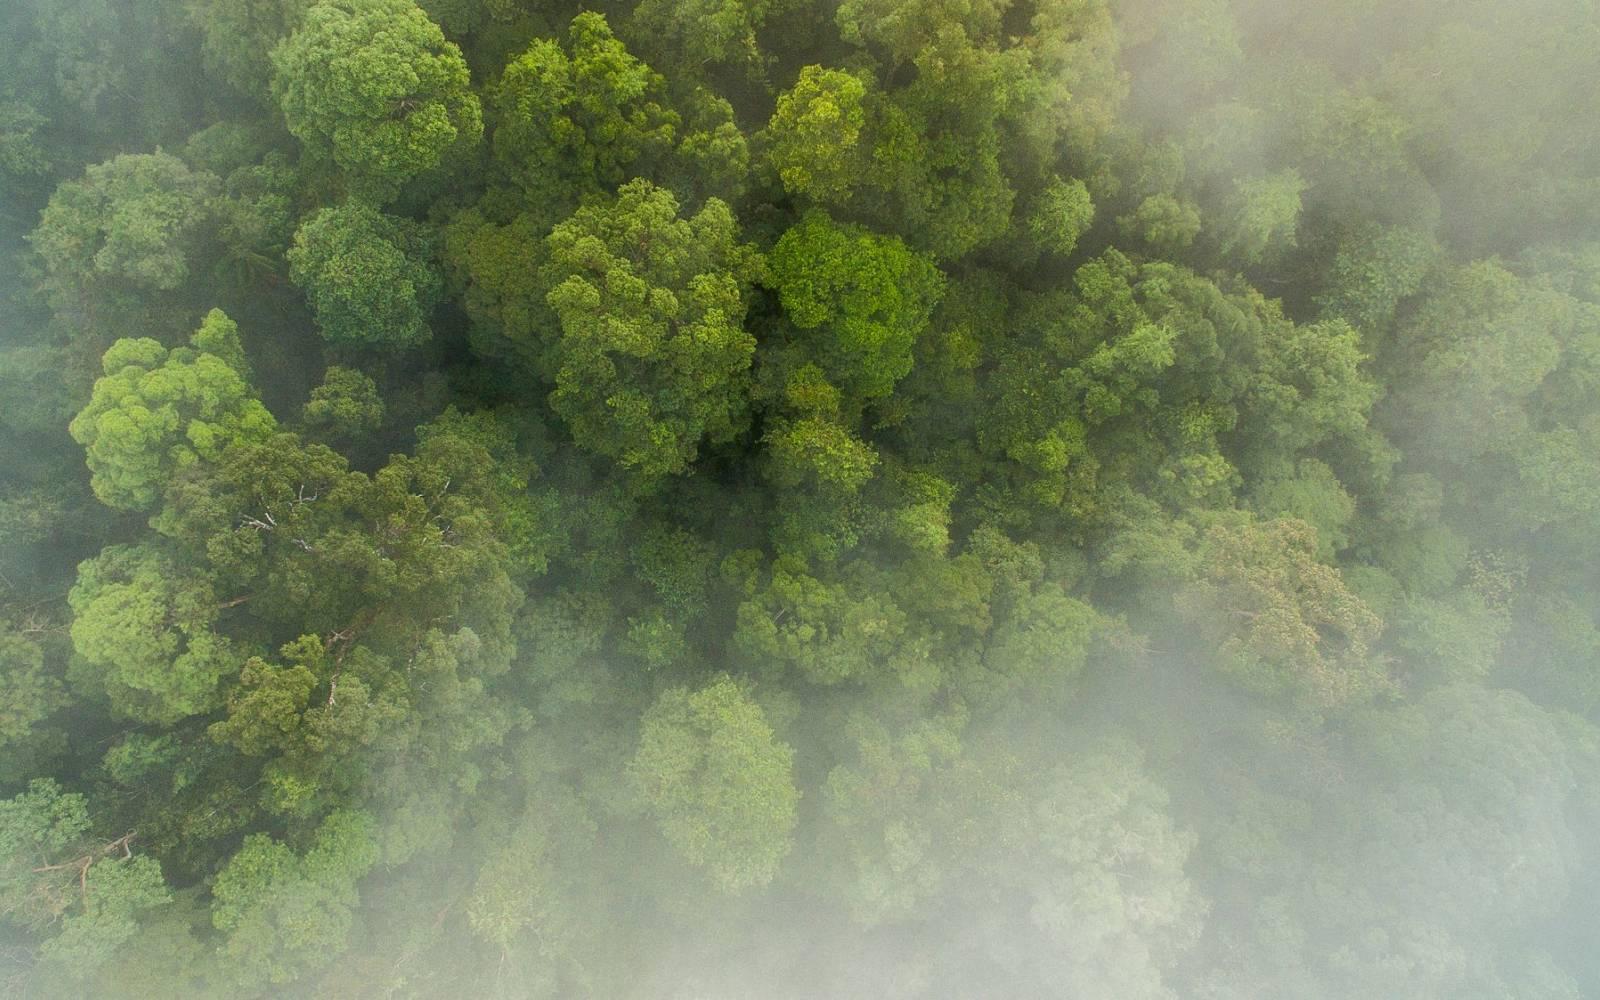 Luftaufnahme des Regenwaldes in Sumatra, Indonesien